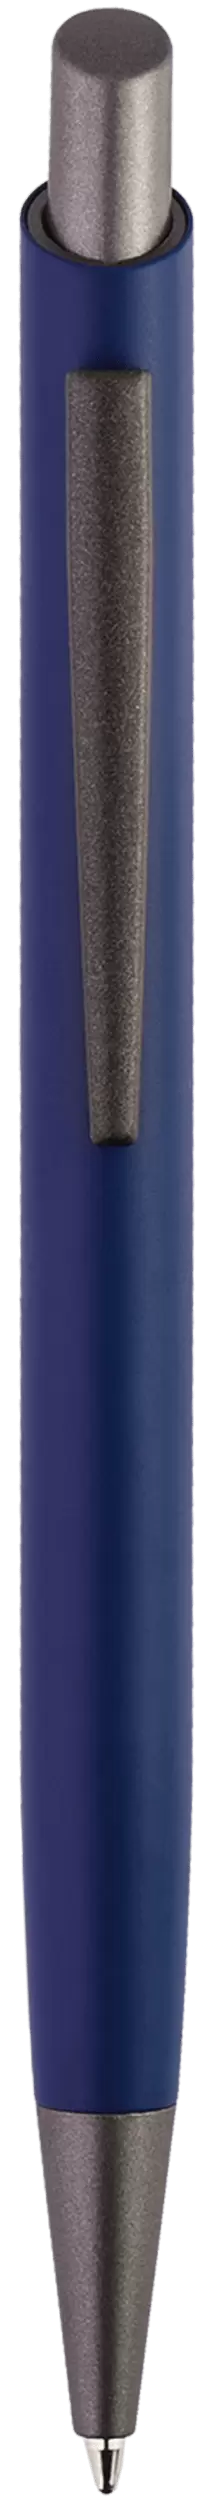 Ручка ELFARO TITAN Темно-синяя 3052-14